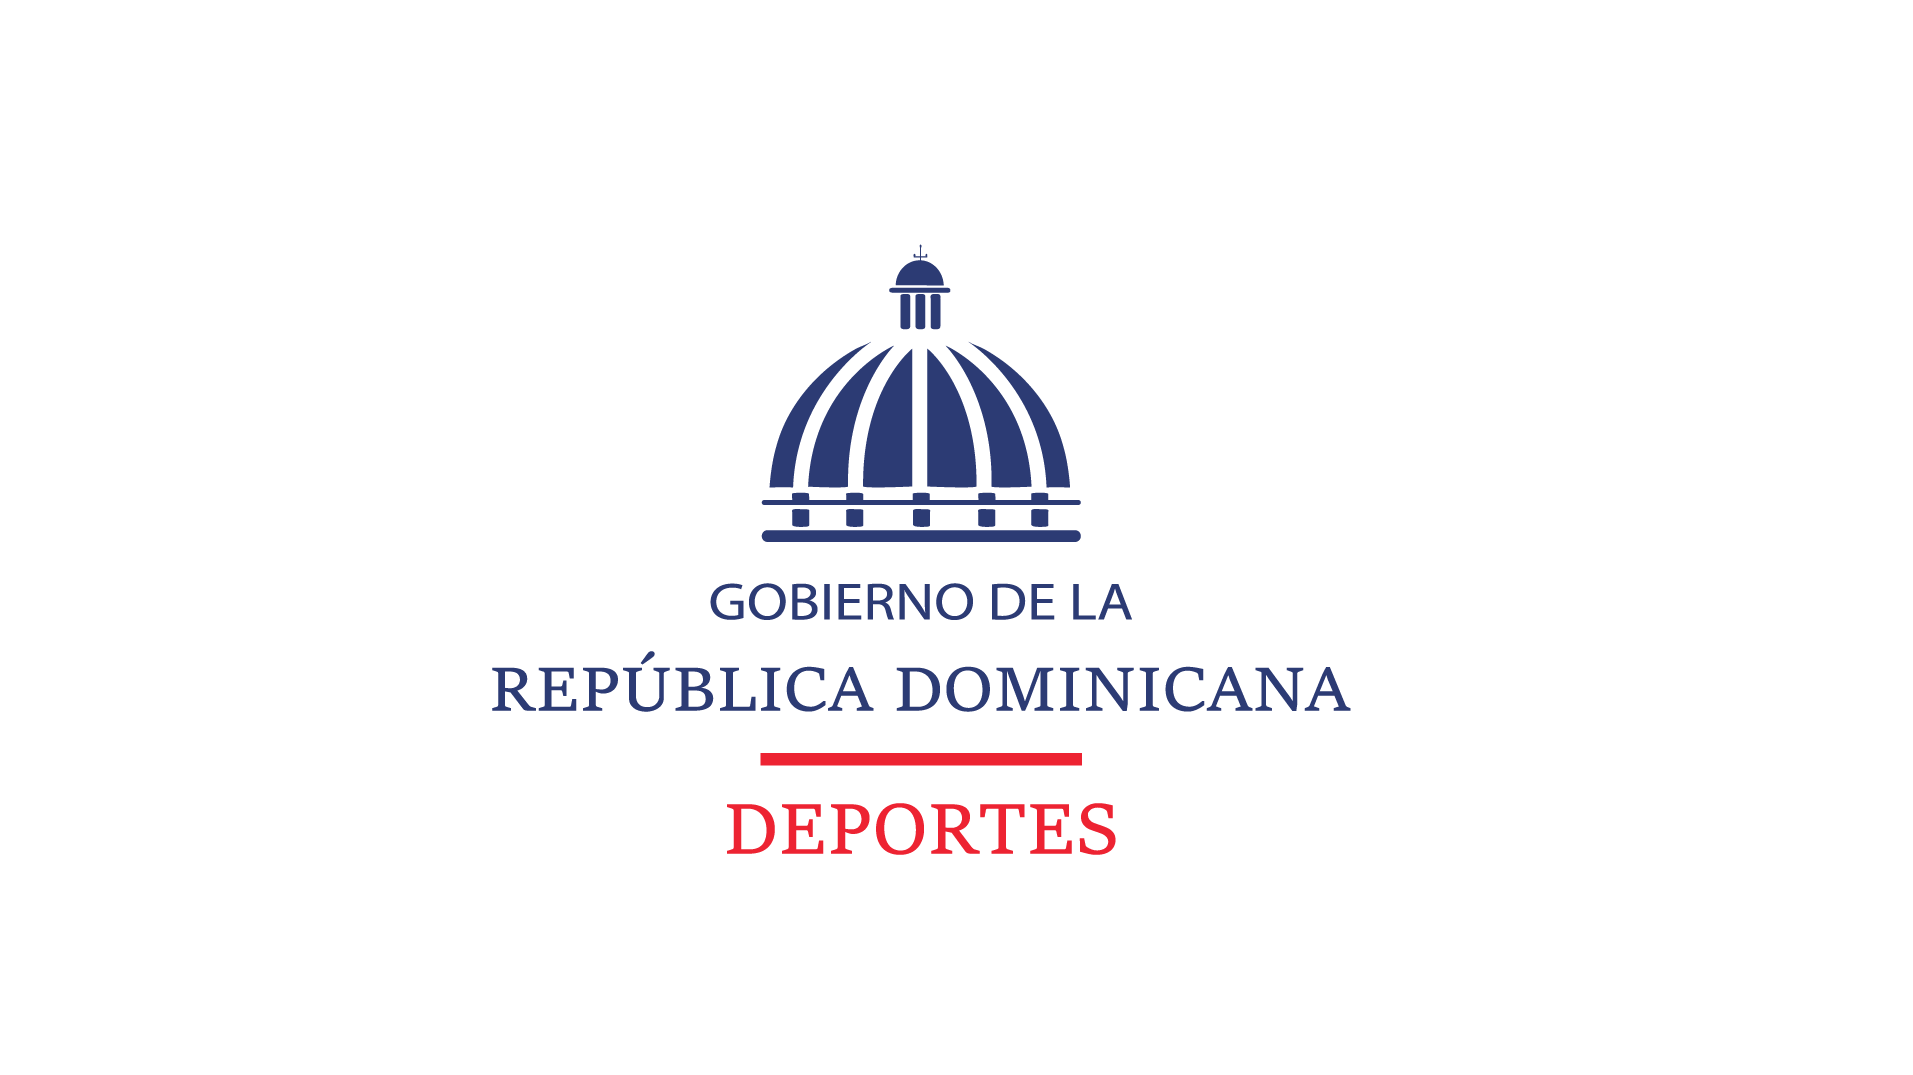 Escudo Dominicano y Logo Presidencial